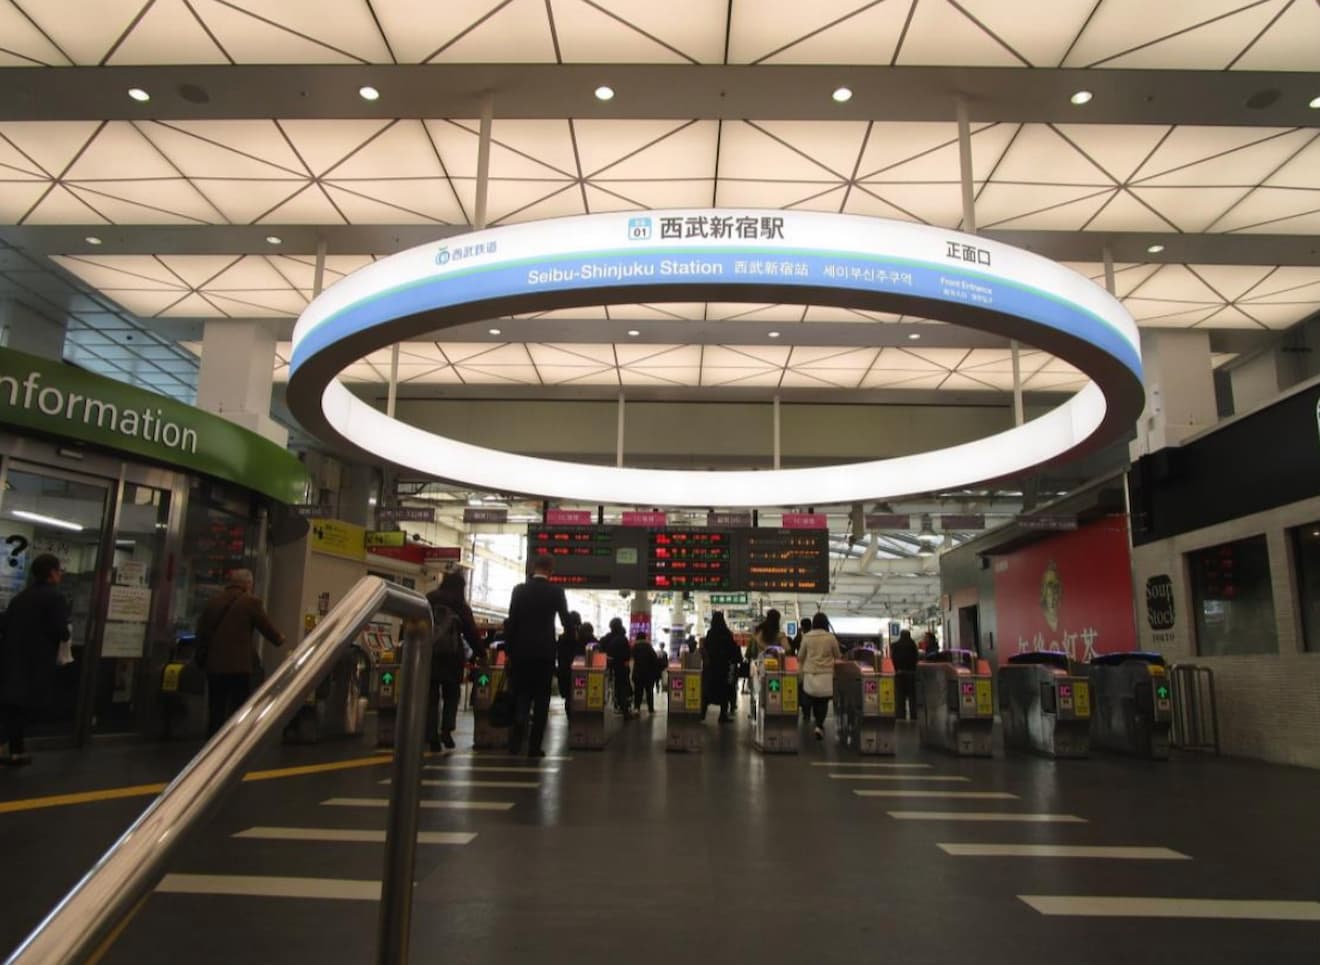 引用：新宿線の玄関口である西武新宿駅のリニューアル工事が完成しました！